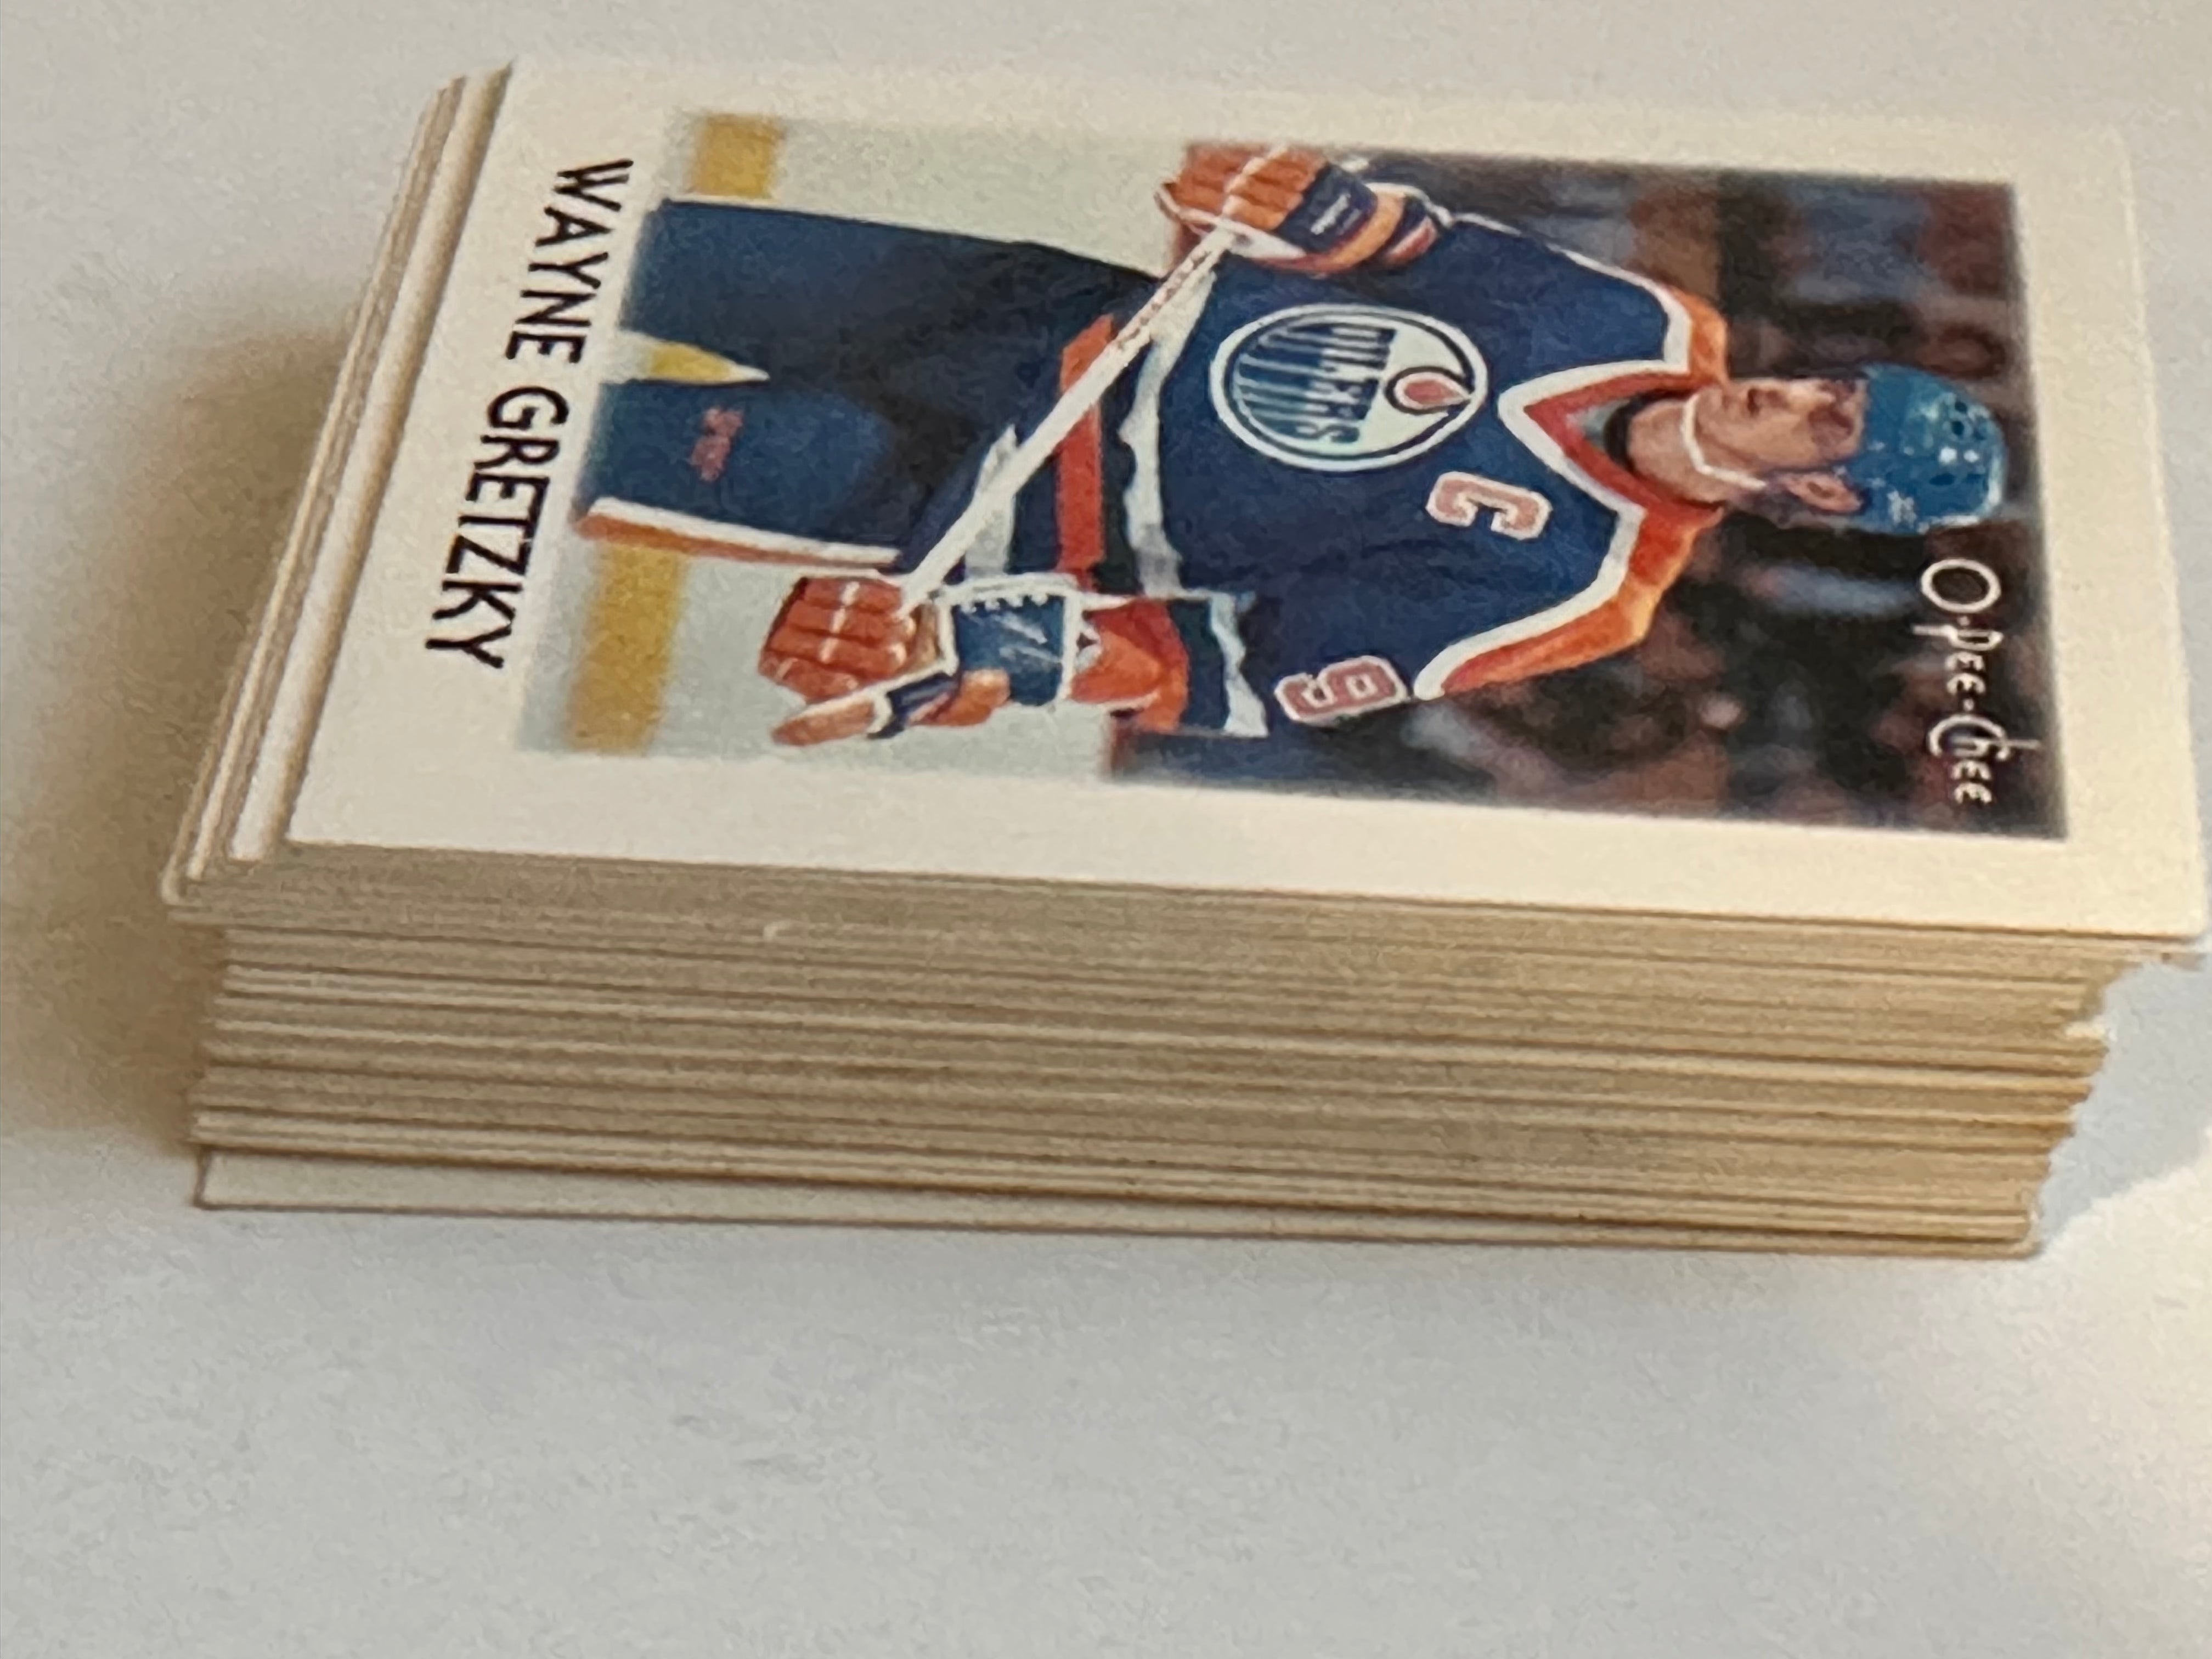 1987-88 Opc hockey mini cards set